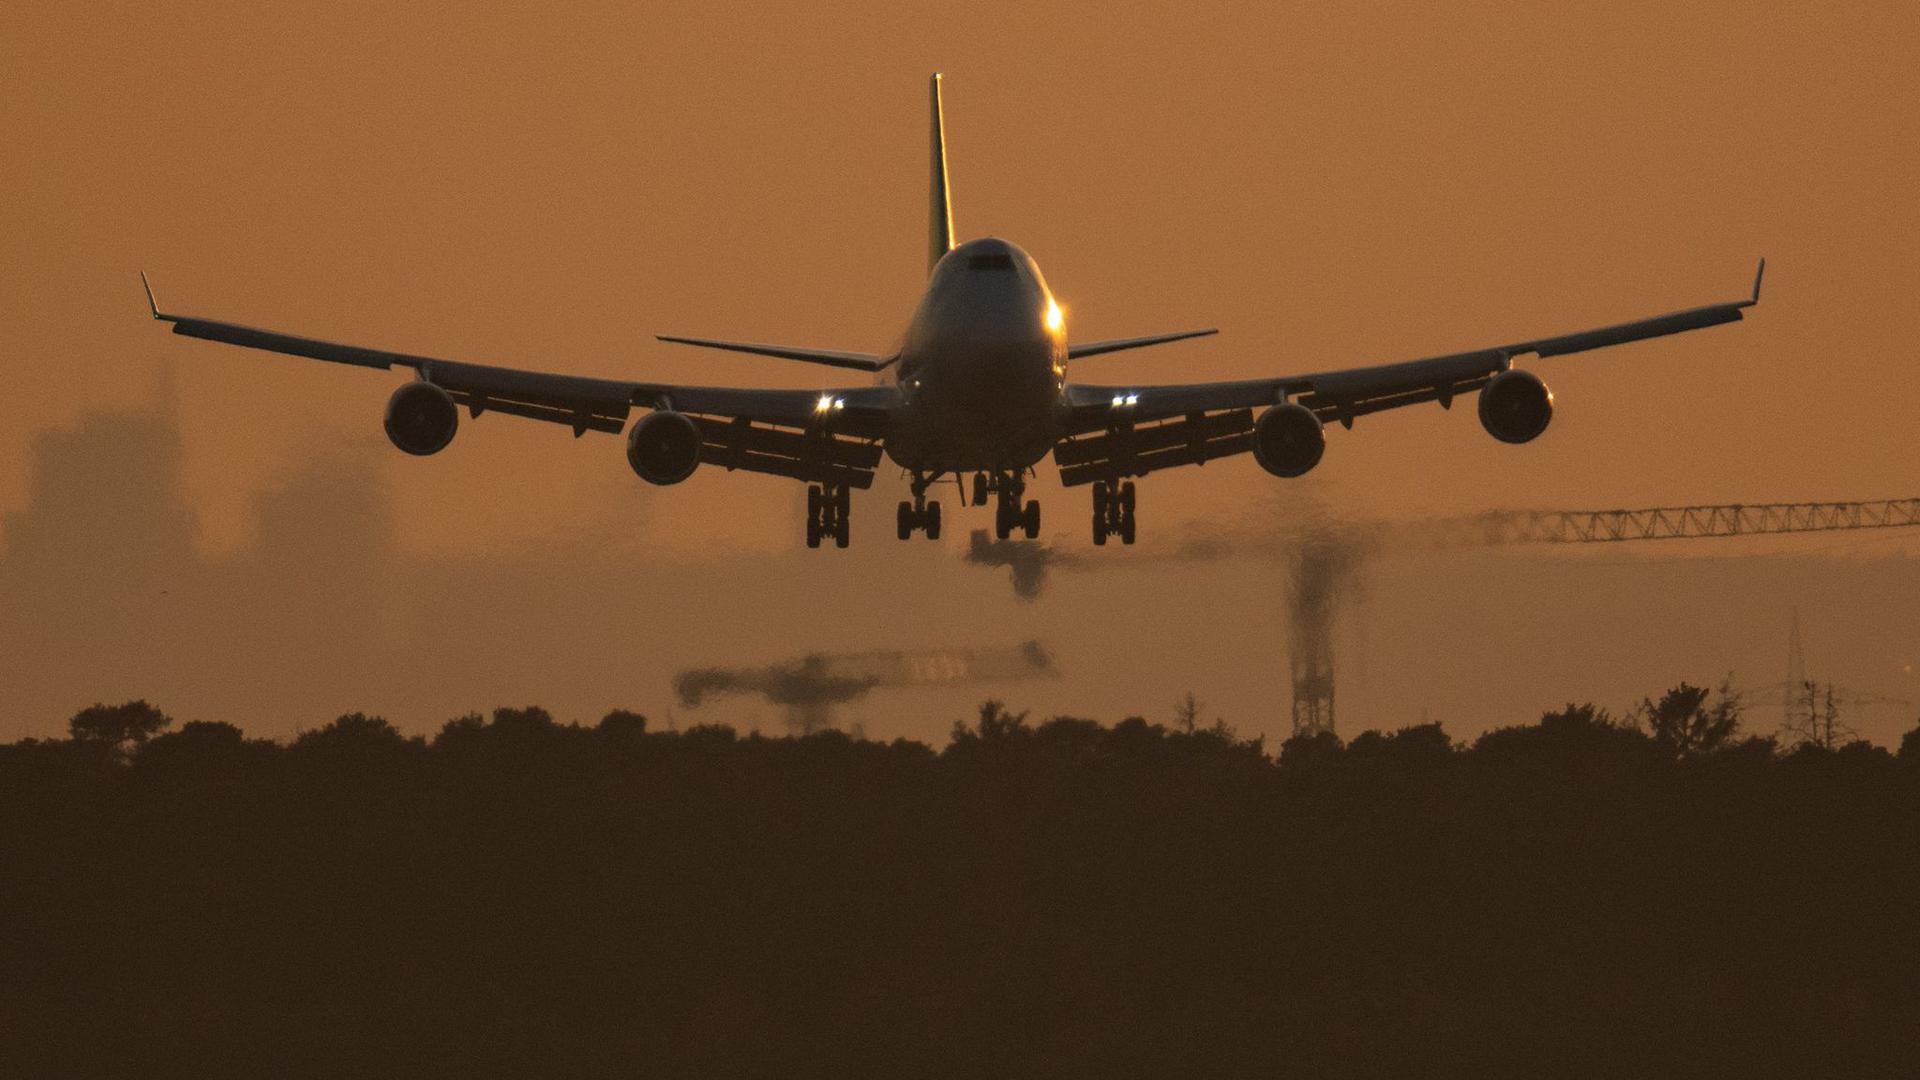 Eine Boeing 747 landet im letzten Licht des Tages auf dem Flughafen Frankfurt.